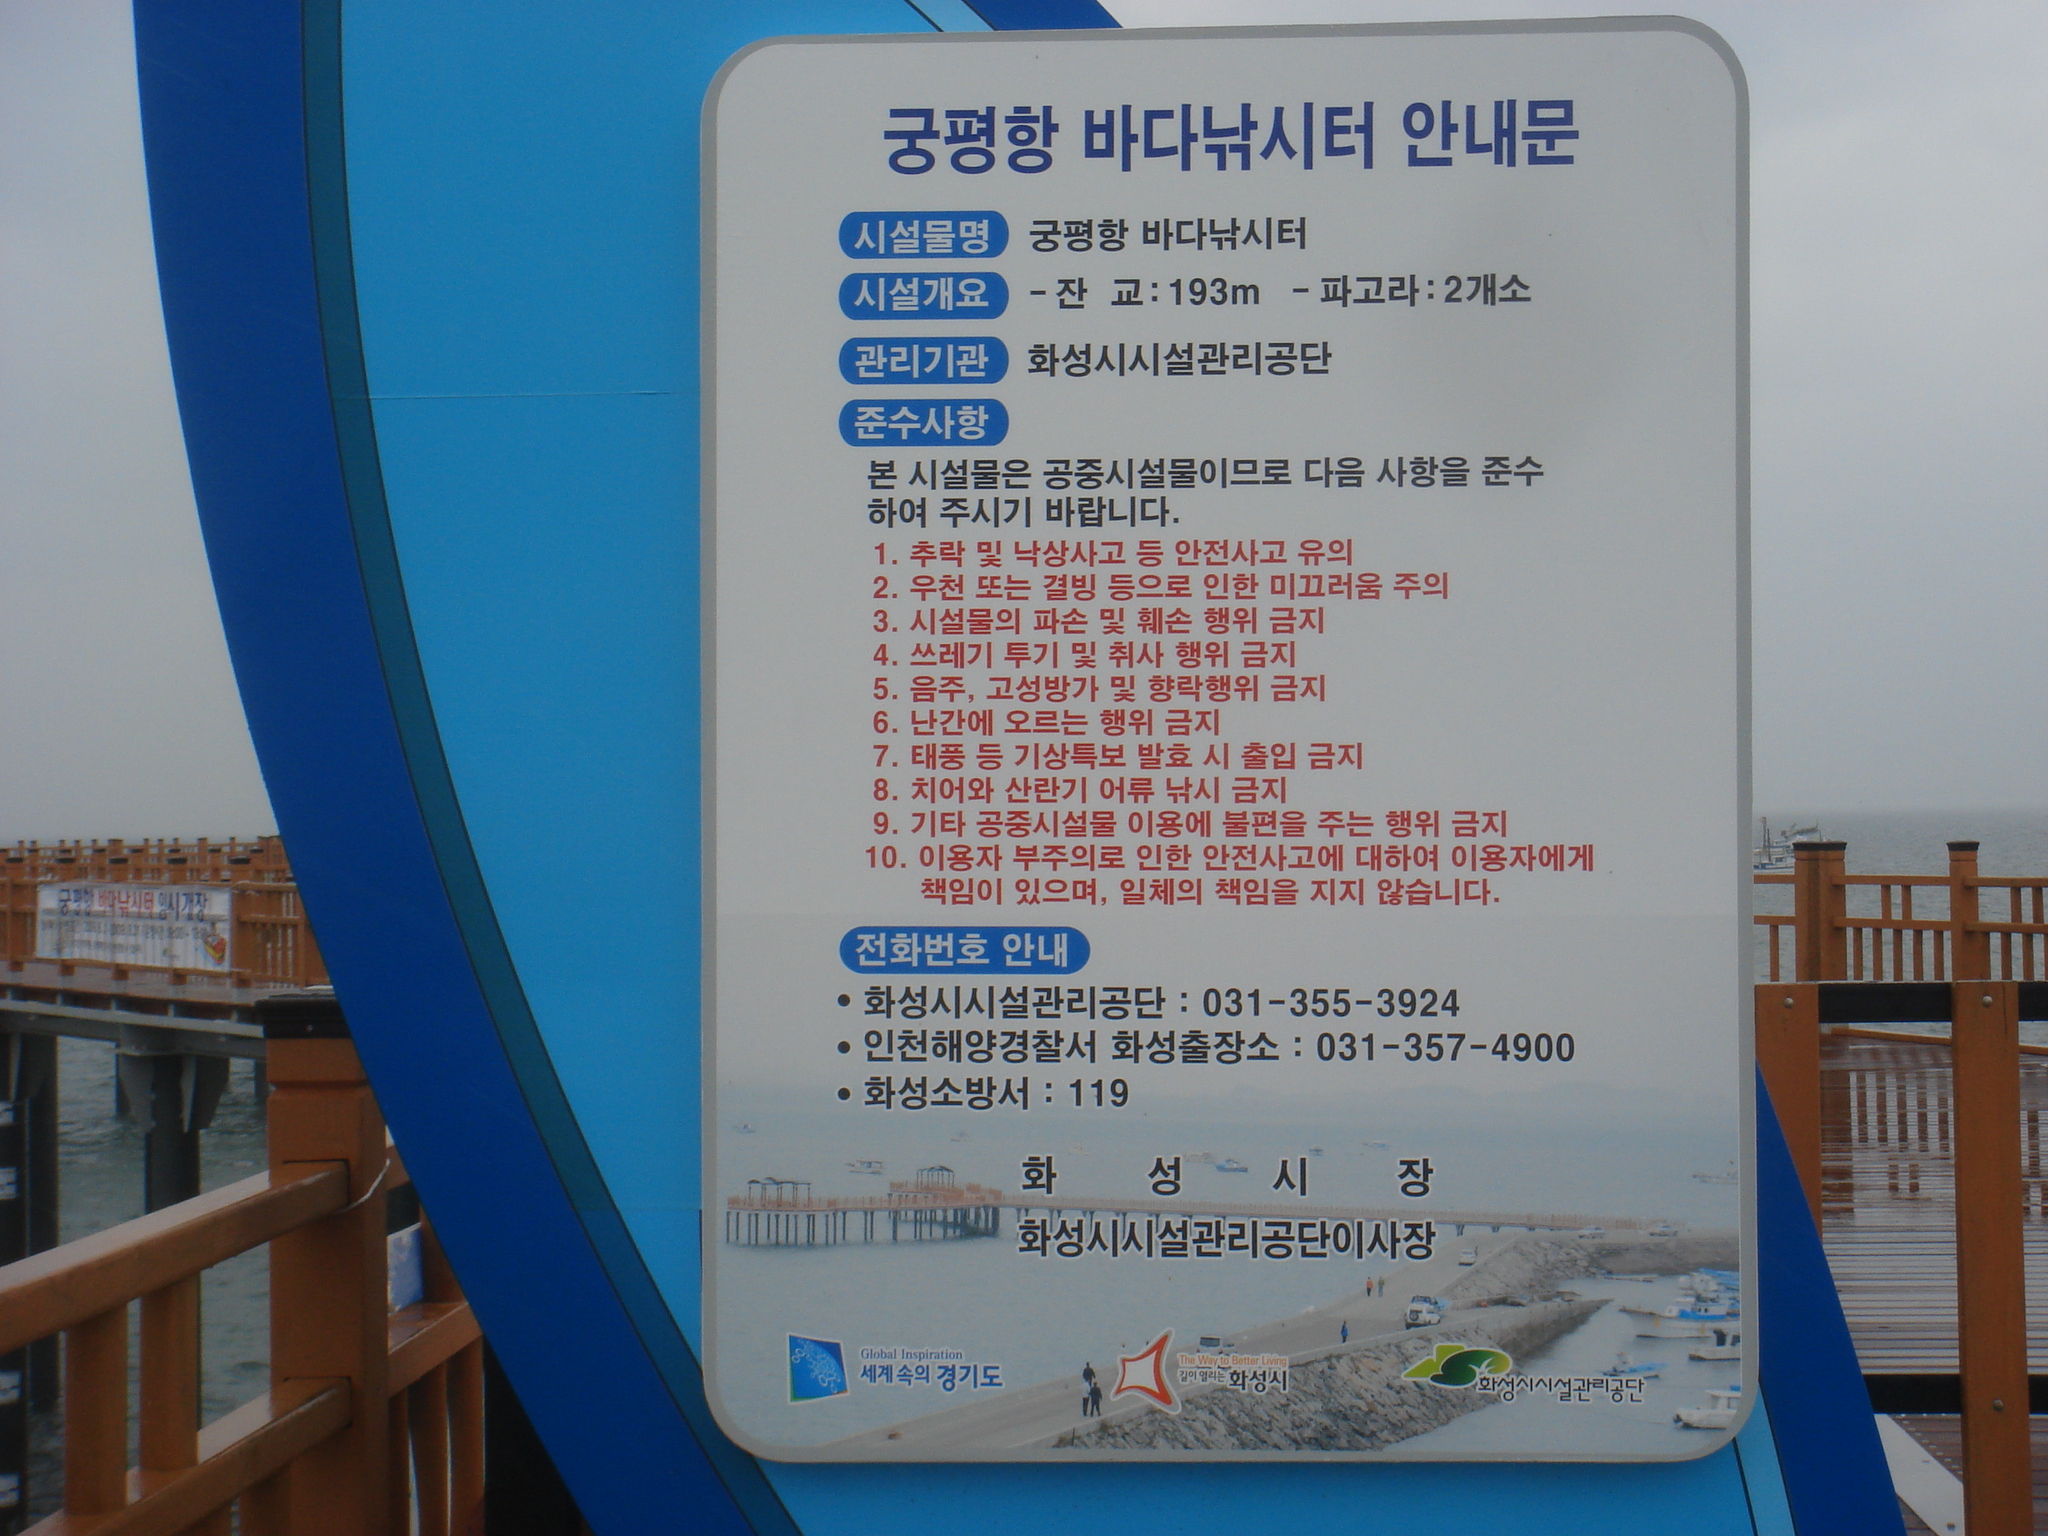 양평역 앞 남한강 조망대 벤치마킹 대상 : 화성시 궁평항 바다낚시터, 궁평항 바다낚시터 안내문